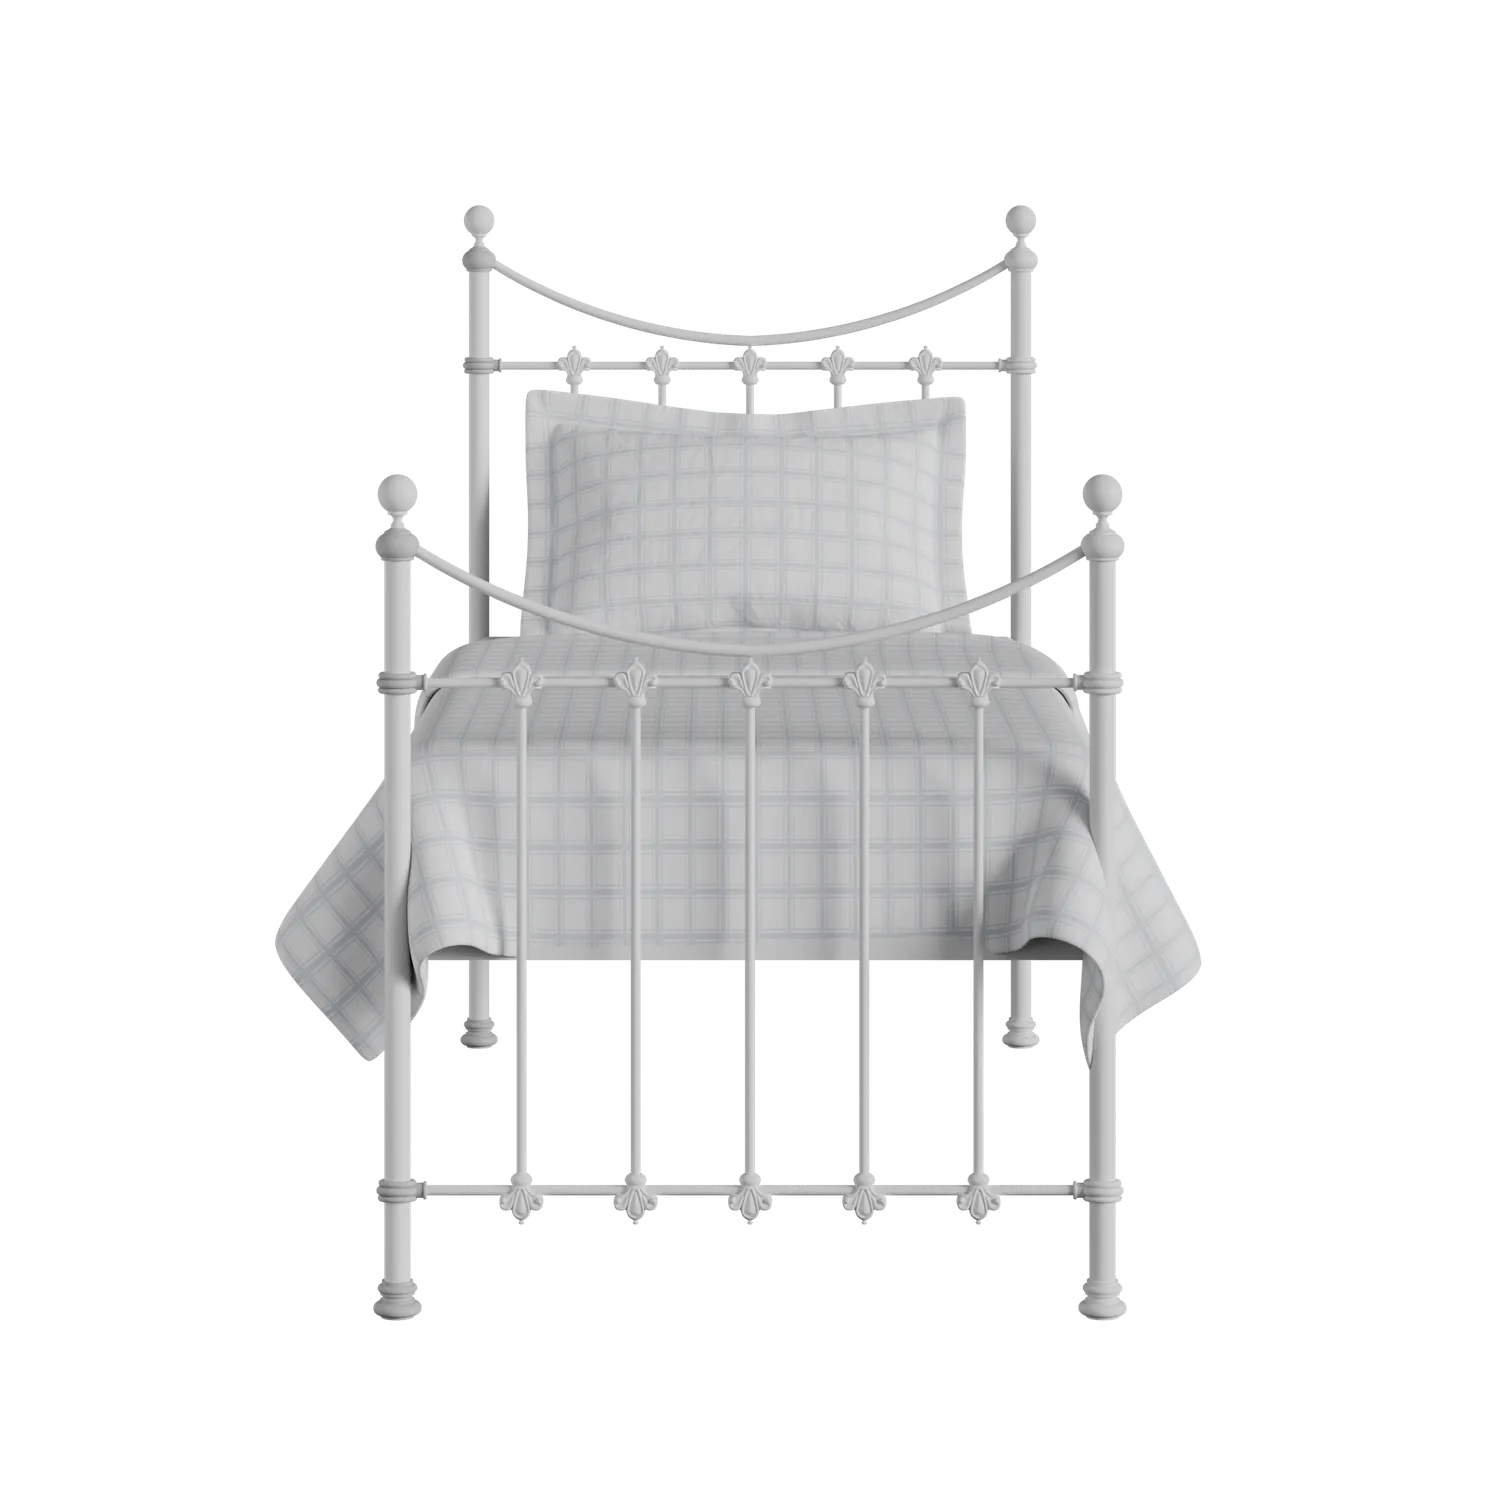 Chatsworth cama individual de metal en blanco